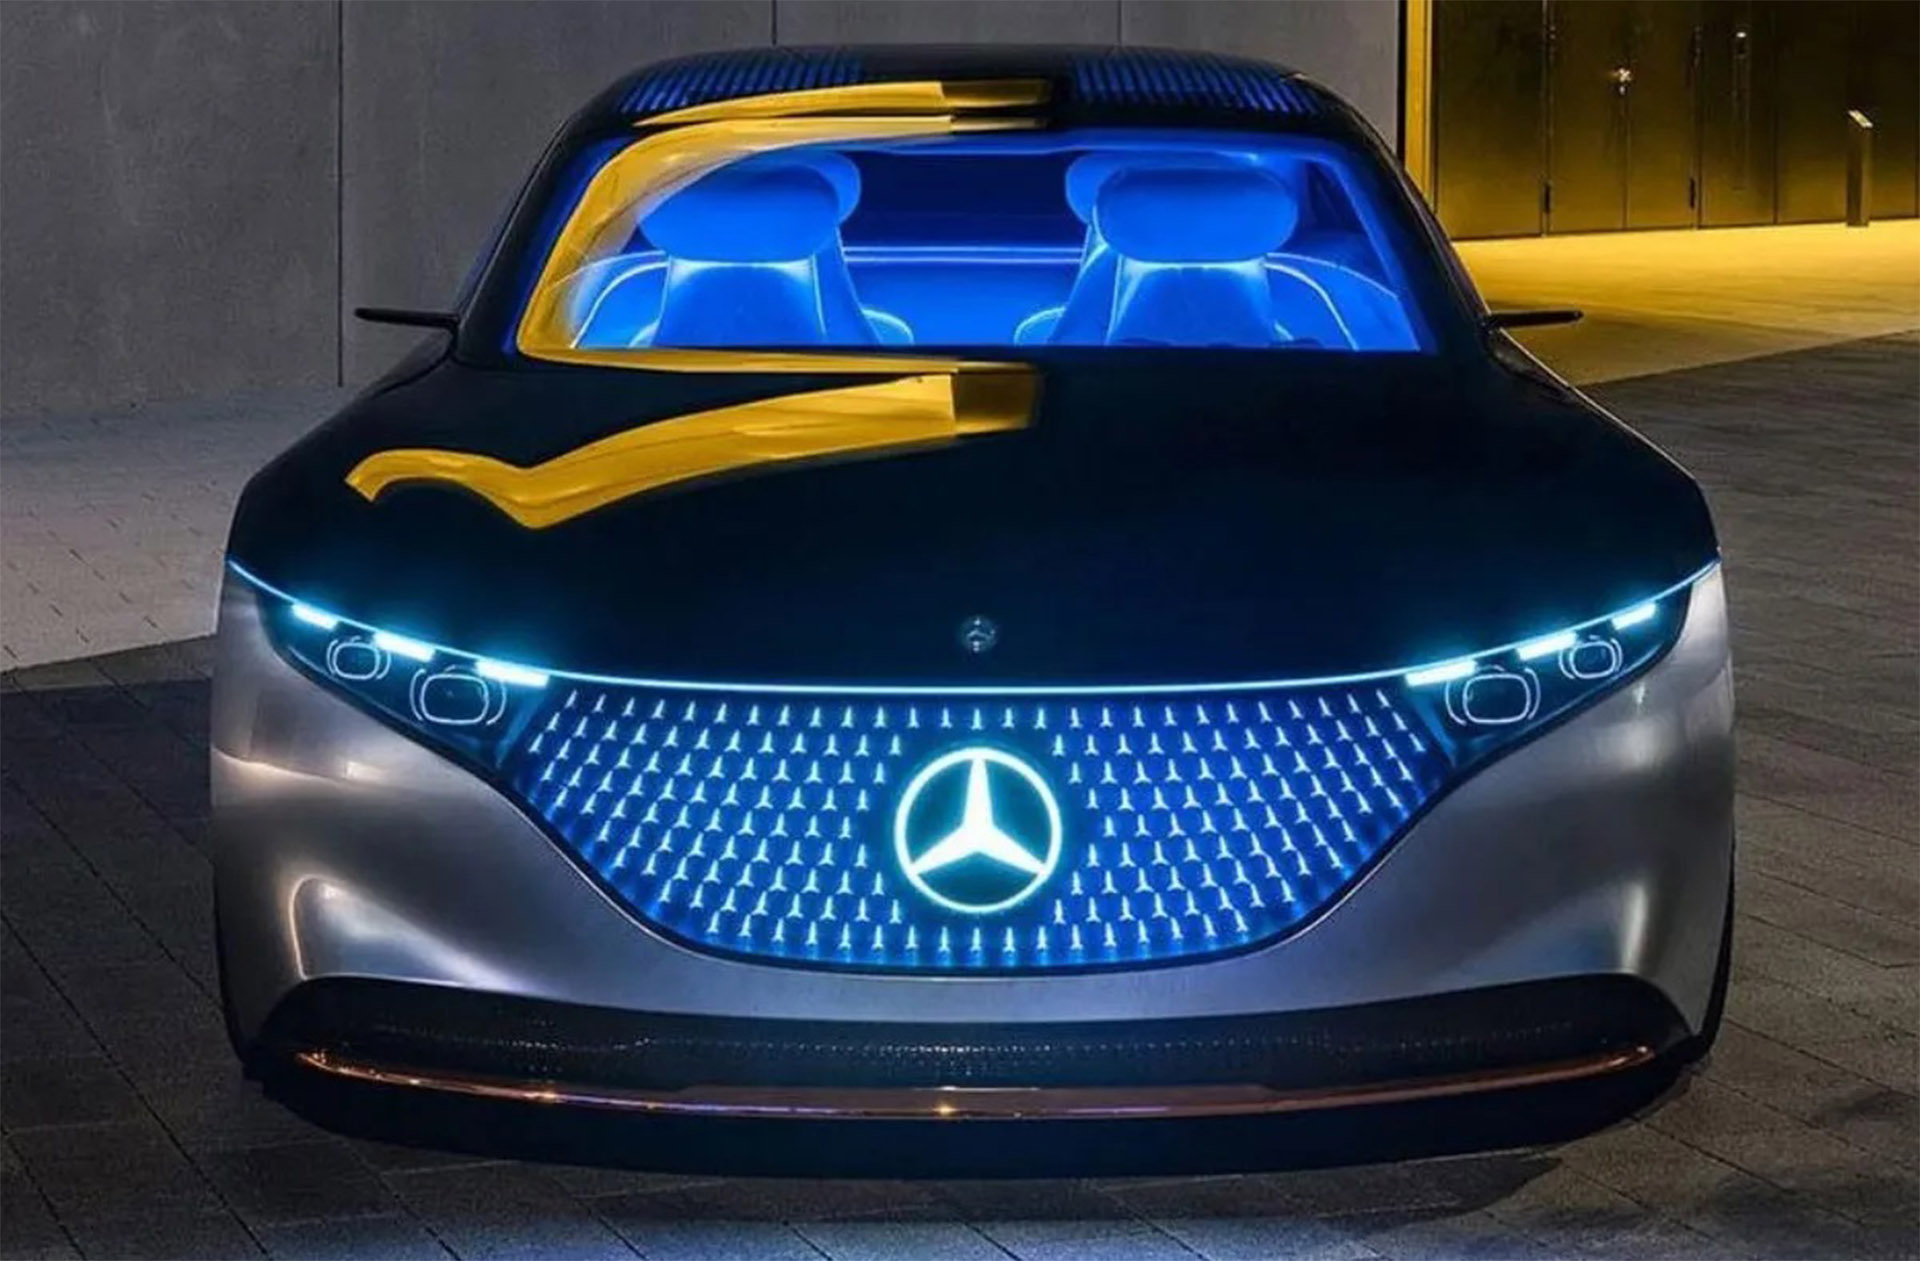 Mercedes apostó todo a los autos eléctricos y anunció que para 2030 solo venderá esa tecnología en Europa